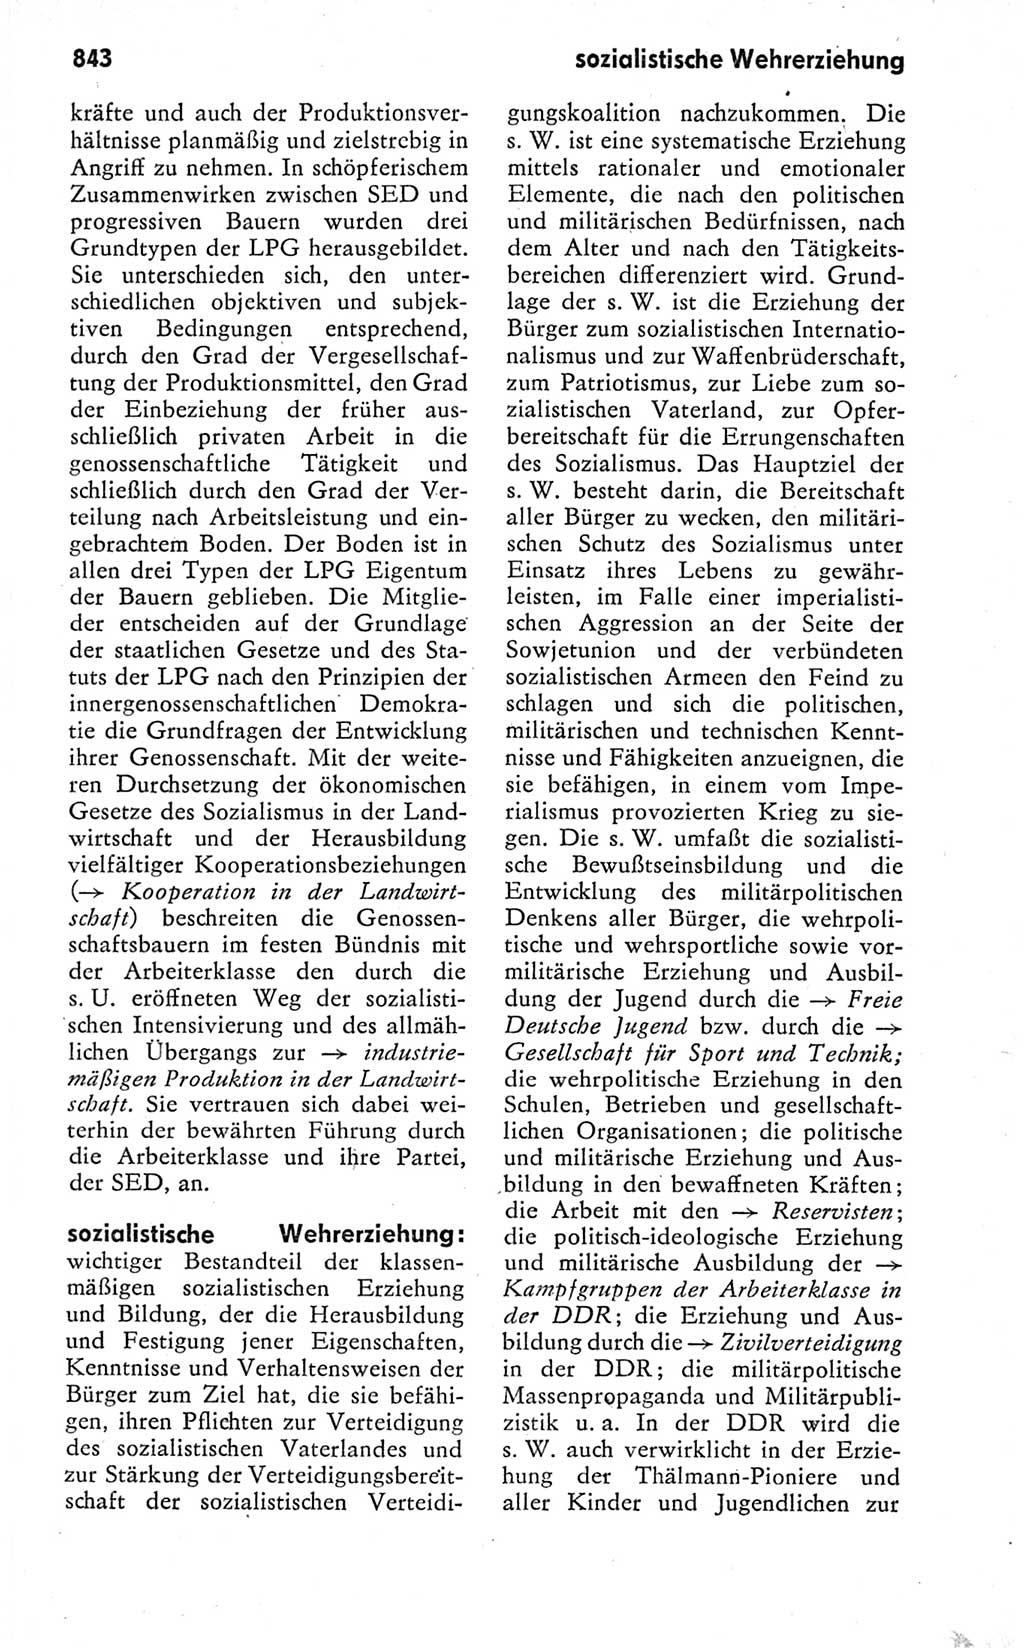 Kleines politisches Wörterbuch [Deutsche Demokratische Republik (DDR)] 1978, Seite 843 (Kl. pol. Wb. DDR 1978, S. 843)